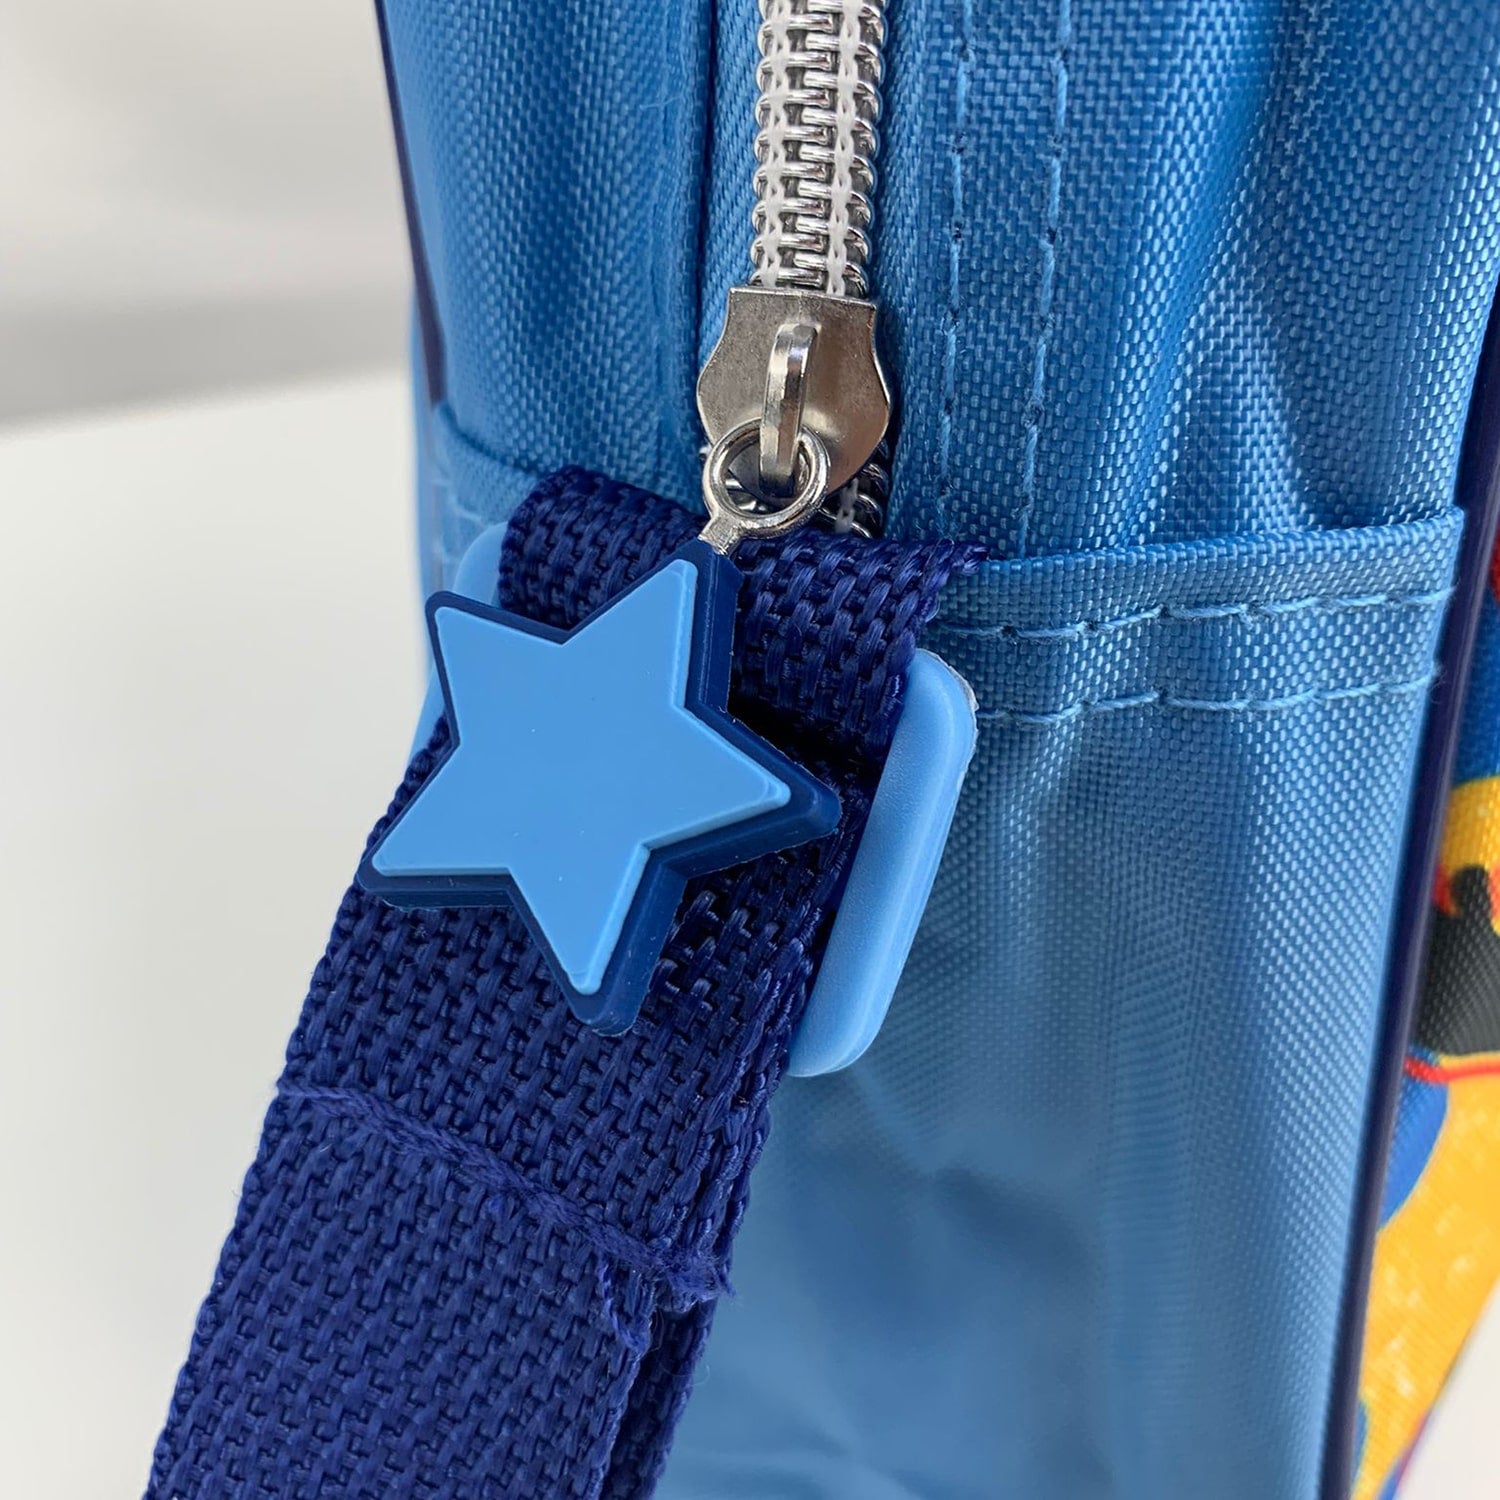 Borsa Bing borsetta tracolla regolabile e zip per bambino Scuola bambini 4310